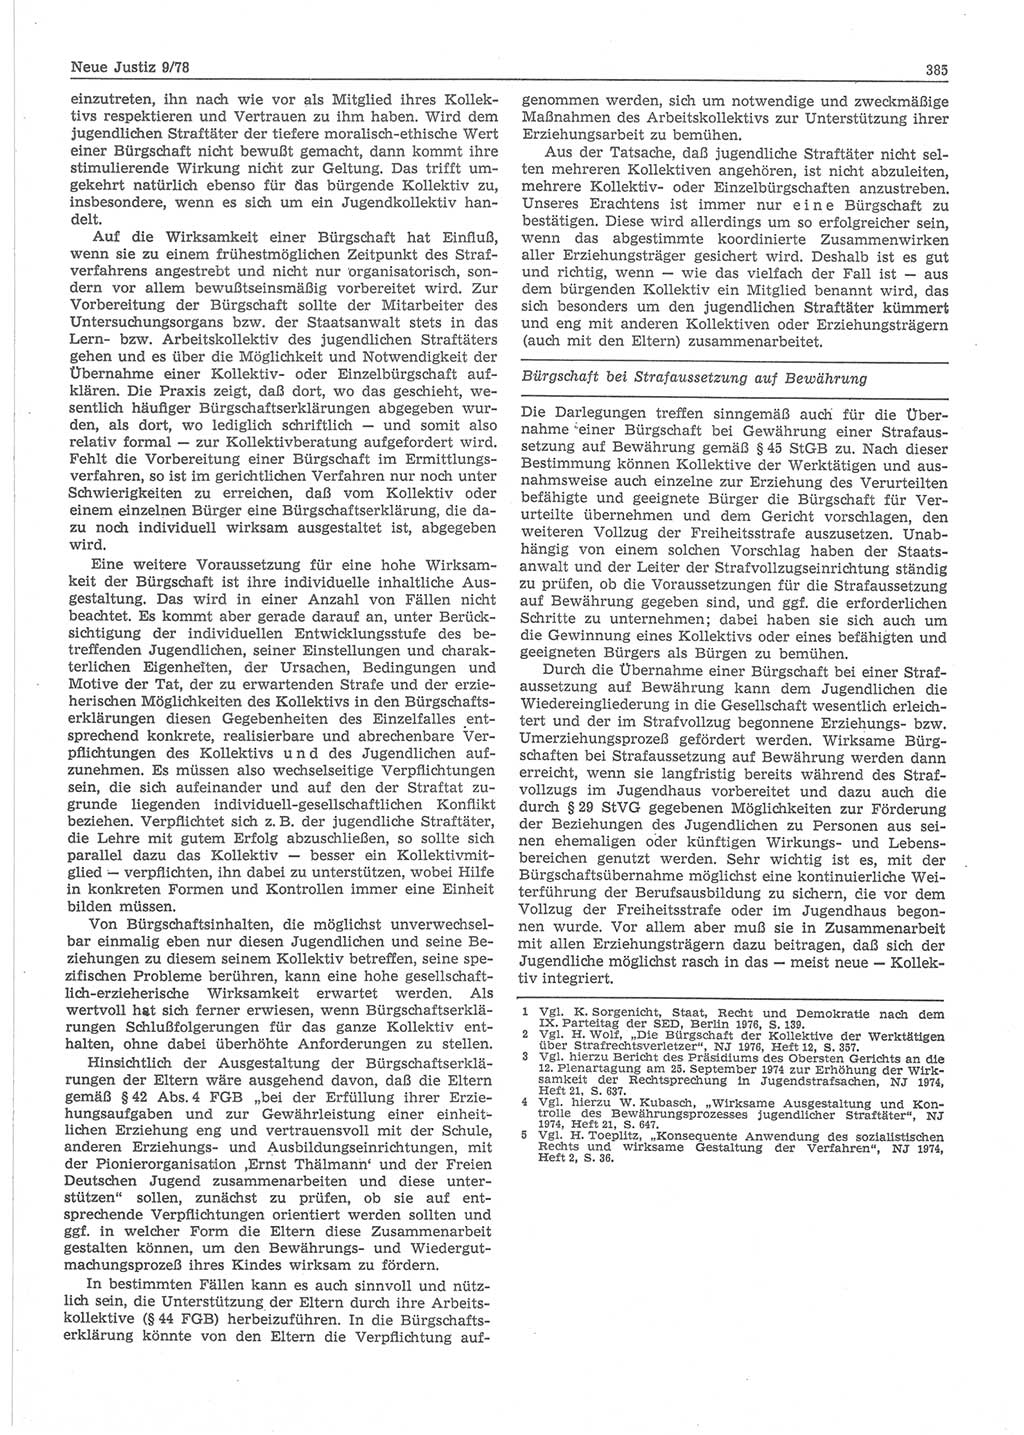 Neue Justiz (NJ), Zeitschrift für sozialistisches Recht und Gesetzlichkeit [Deutsche Demokratische Republik (DDR)], 32. Jahrgang 1978, Seite 385 (NJ DDR 1978, S. 385)